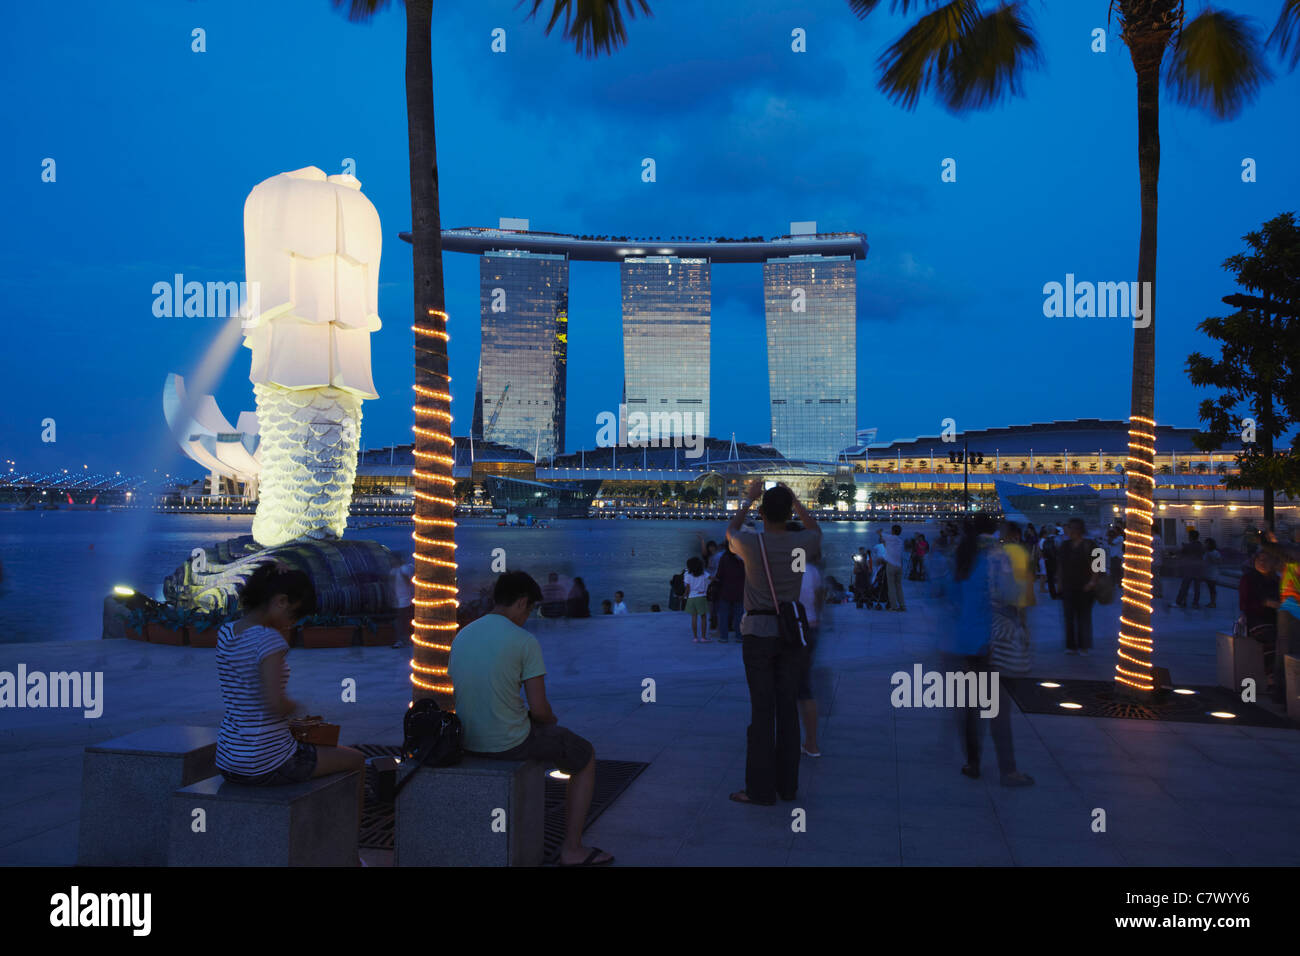 La statue du Merlion et Marina Bay Sands Hotel au crépuscule, Singapour Banque D'Images